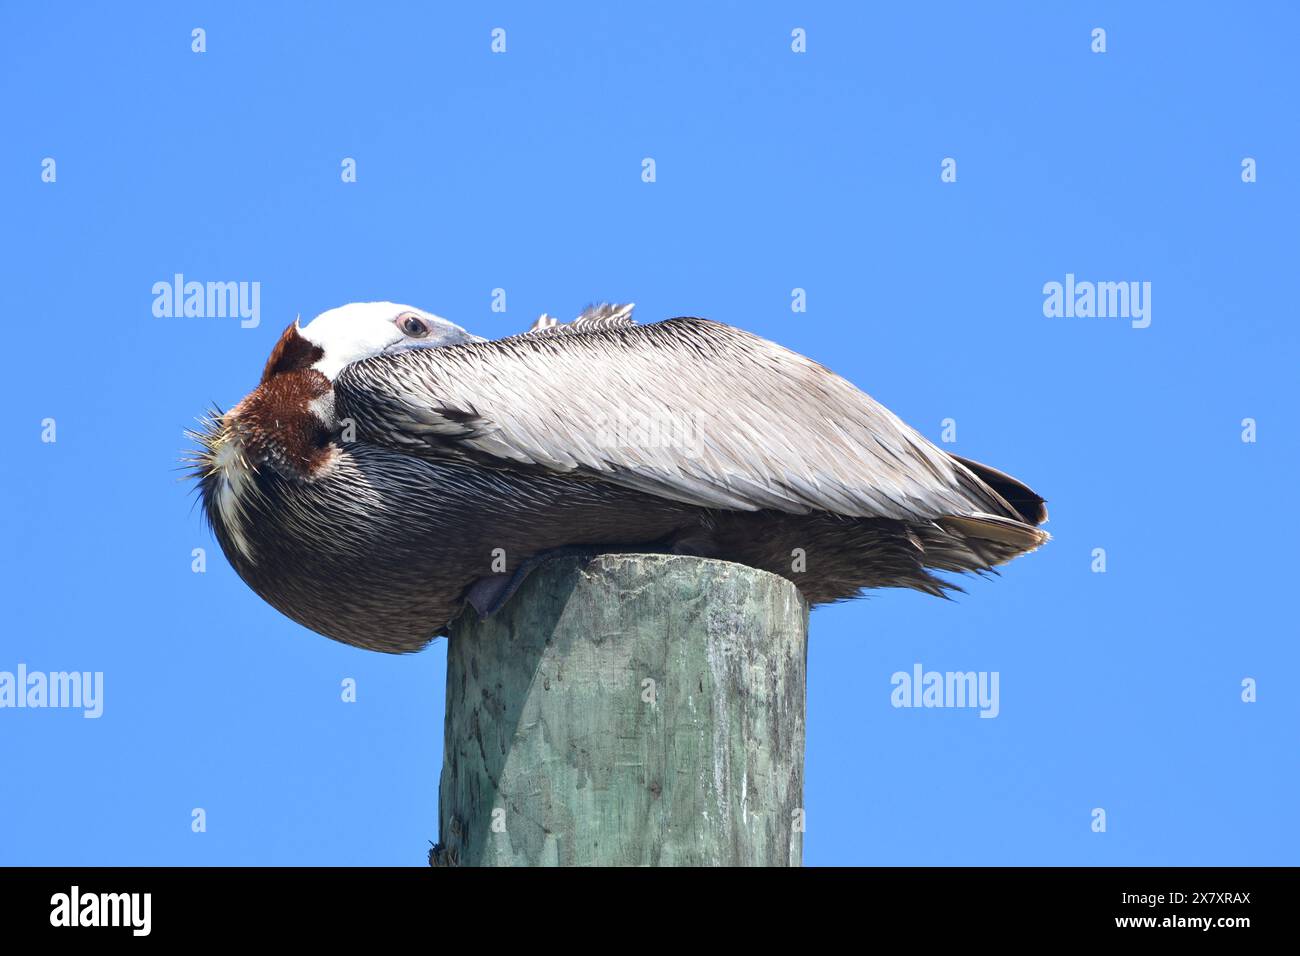 Ein Blick aus der Nähe auf einen braunen Pelikan mit eingezogenem Kopf sitzt auf einem Holzpfahl, vor einem leuchtend klaren blauen Himmel, der aufmerksam beobachtet. Stockfoto